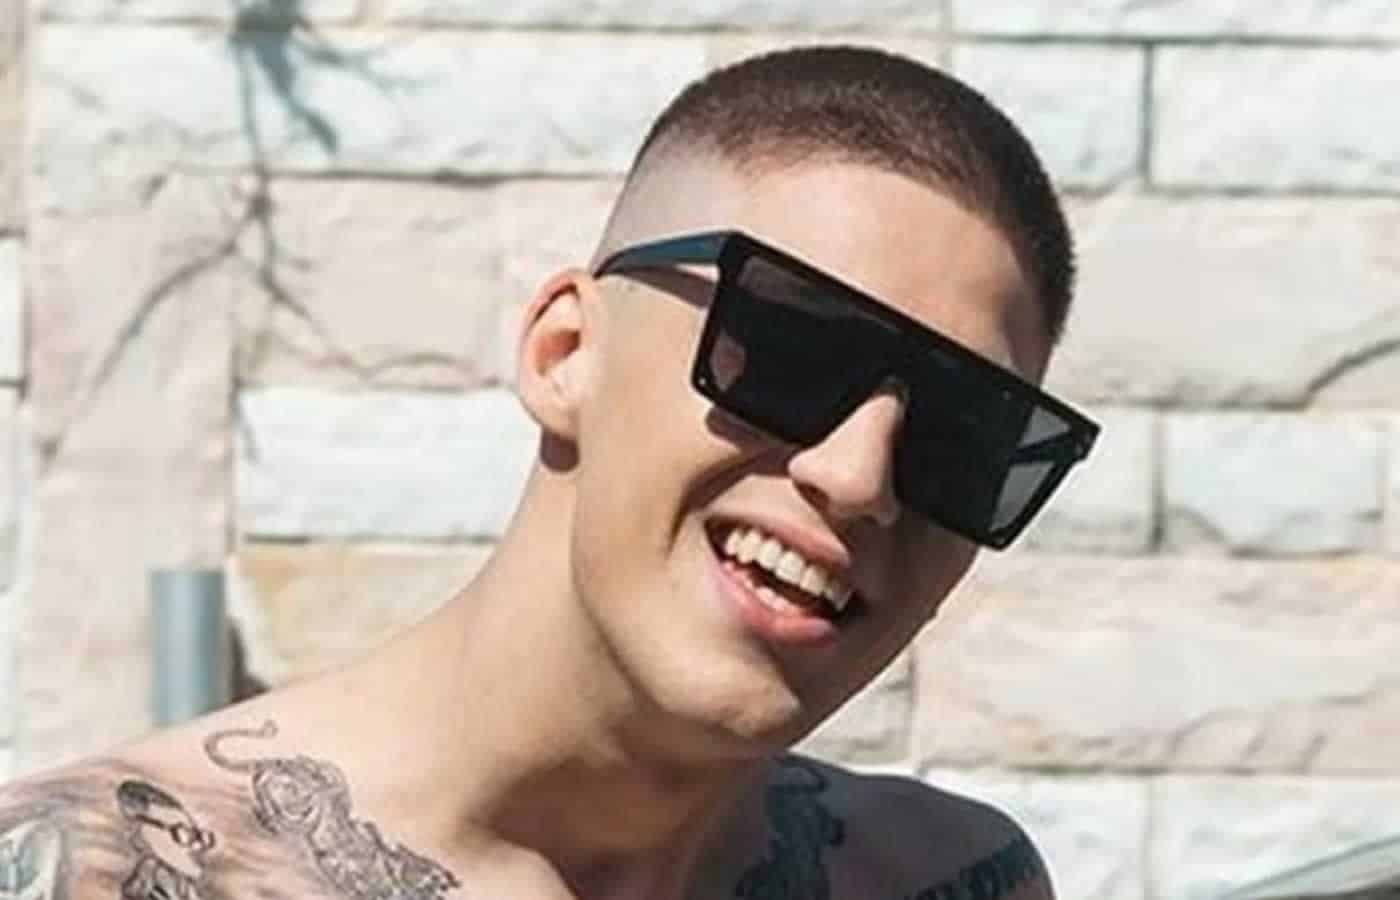 Ο γνωστός τραγουδιστής της τραπ, ο 22 ετών γνωστός σε όλους Τρανός, συνελήφθη τα ξημερώματα στην περιοχή της Ομόνοιας, μαζί με άλλα τρία άτομα